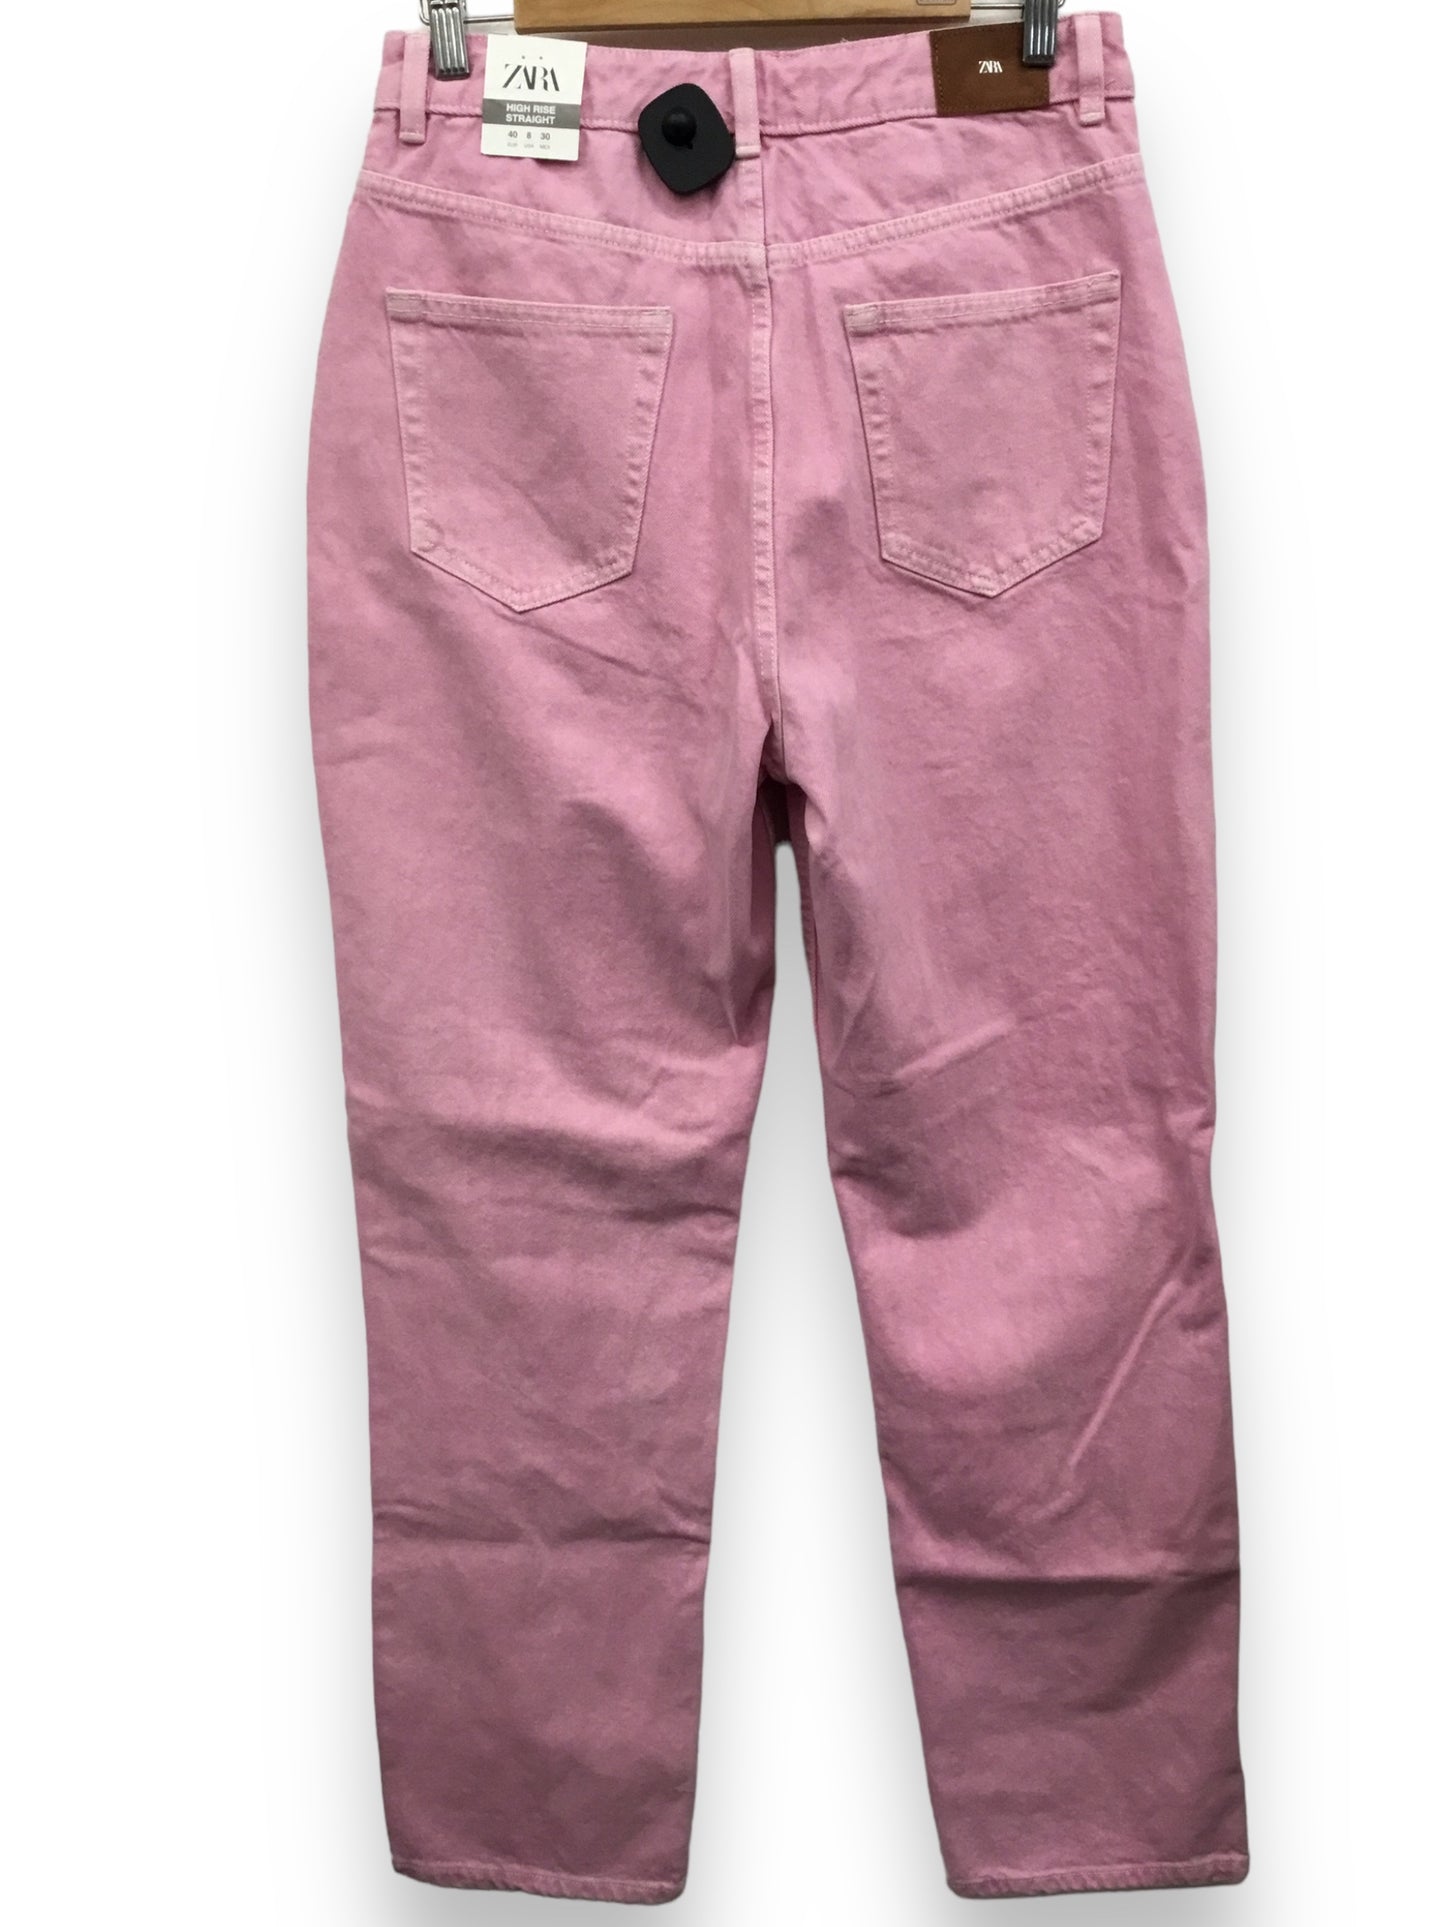 Pants Cargo & Utility By Zara  Size: 8